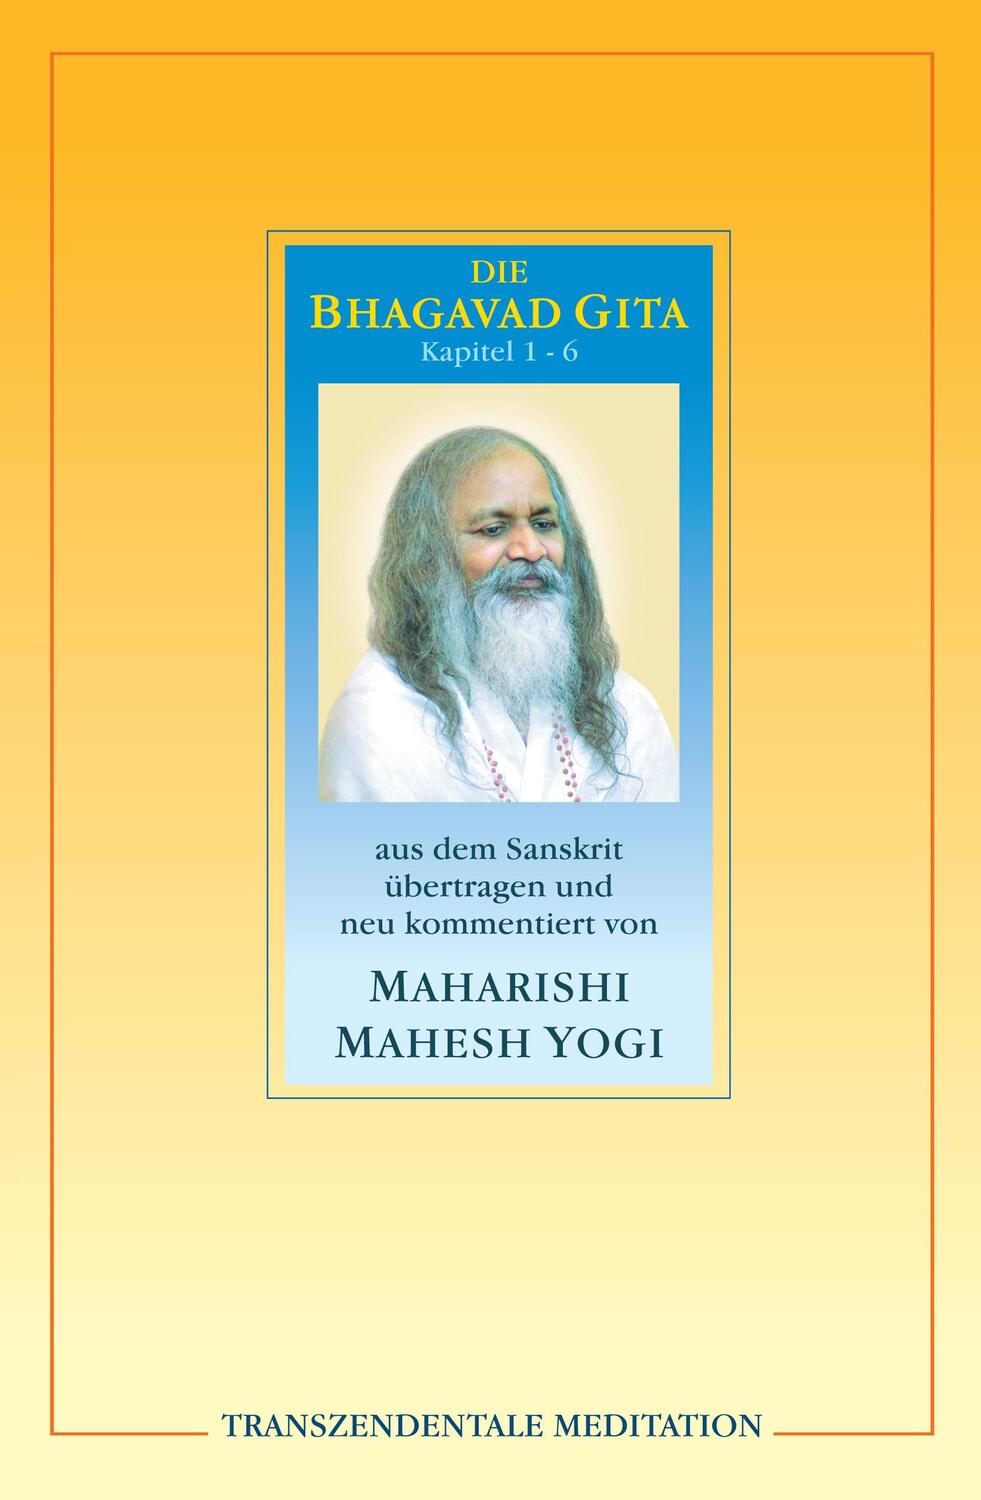 Bhagavad Gita - Maharishi, Mahesh